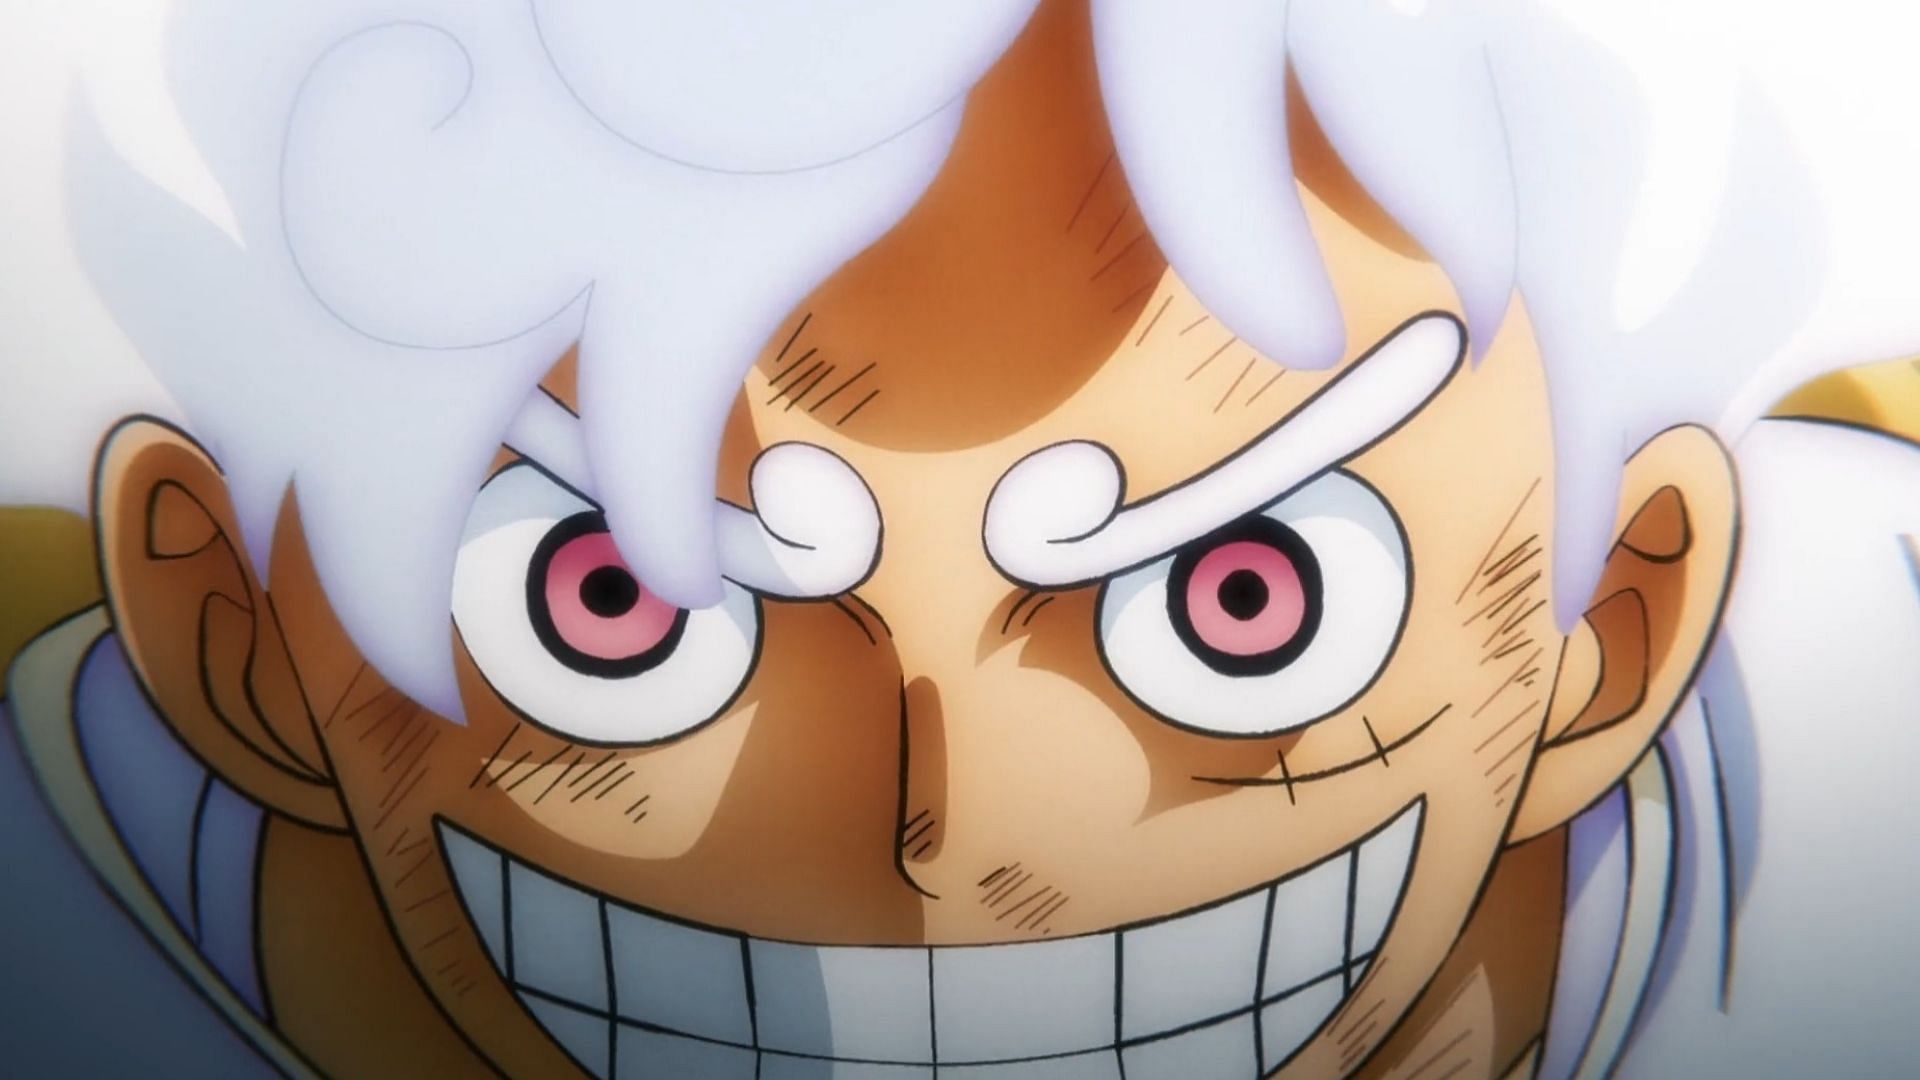 One Piece Gear 5 breaks the internet, again